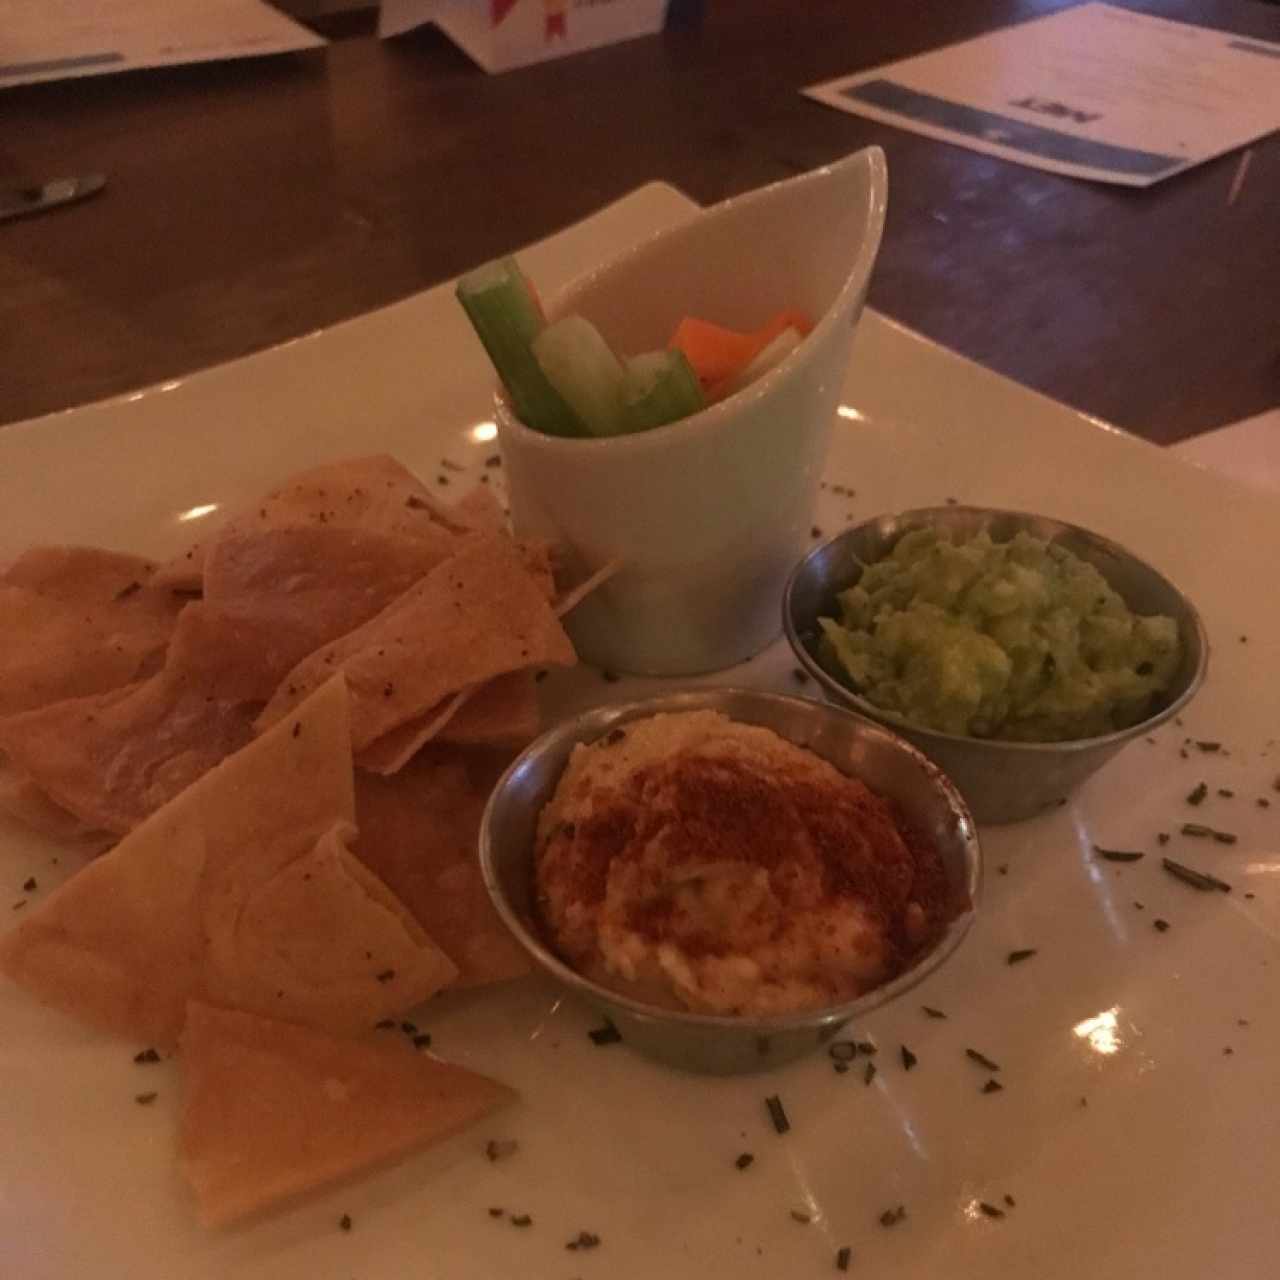 humus y guacamole! 👌🏼